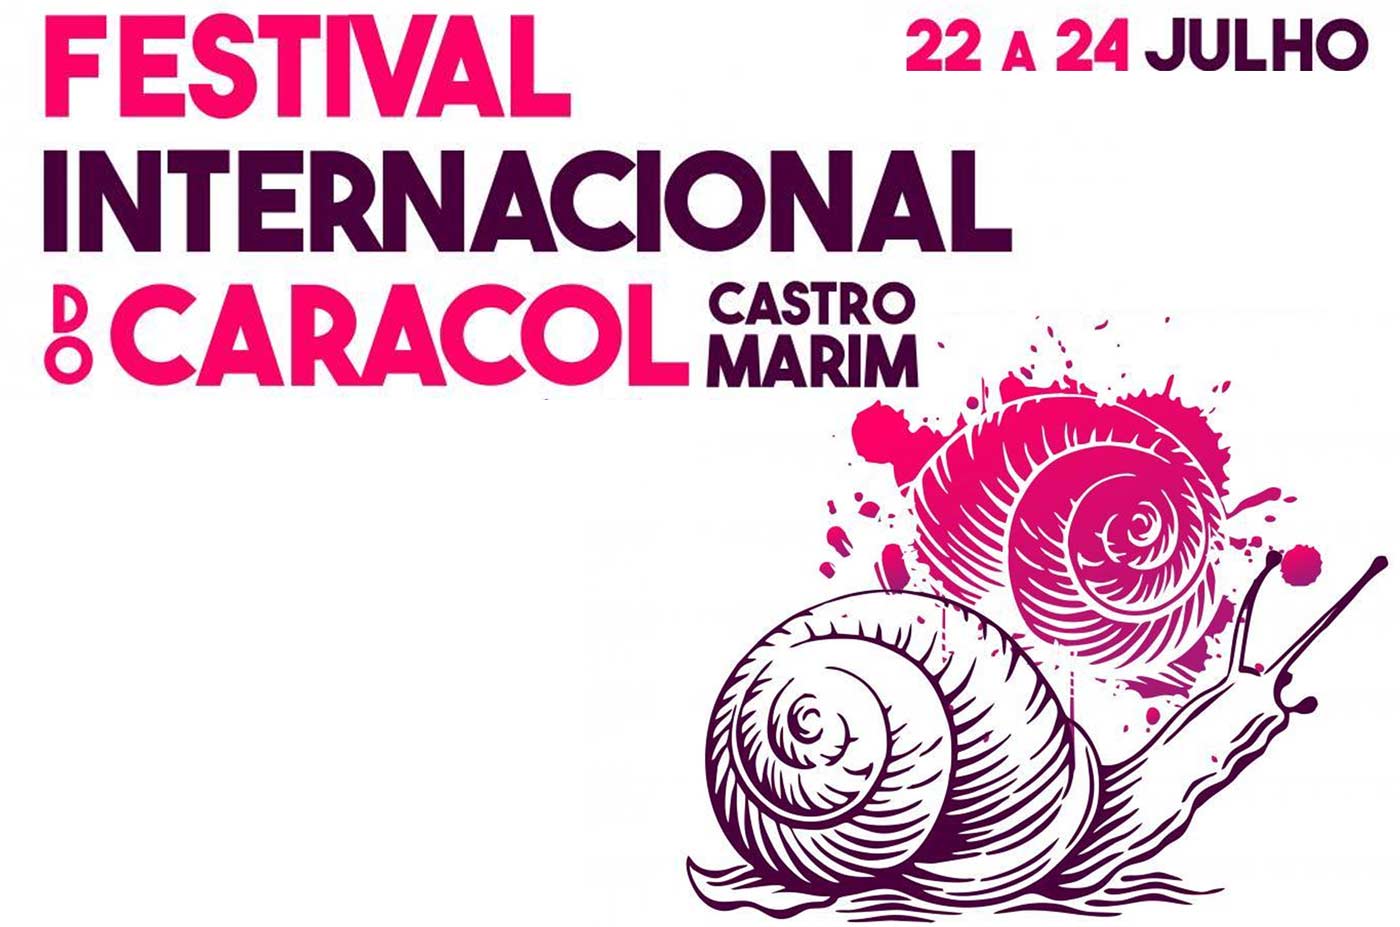 feria internacional del caracol Castro Marin portugal 22 23 24 de julio 2022